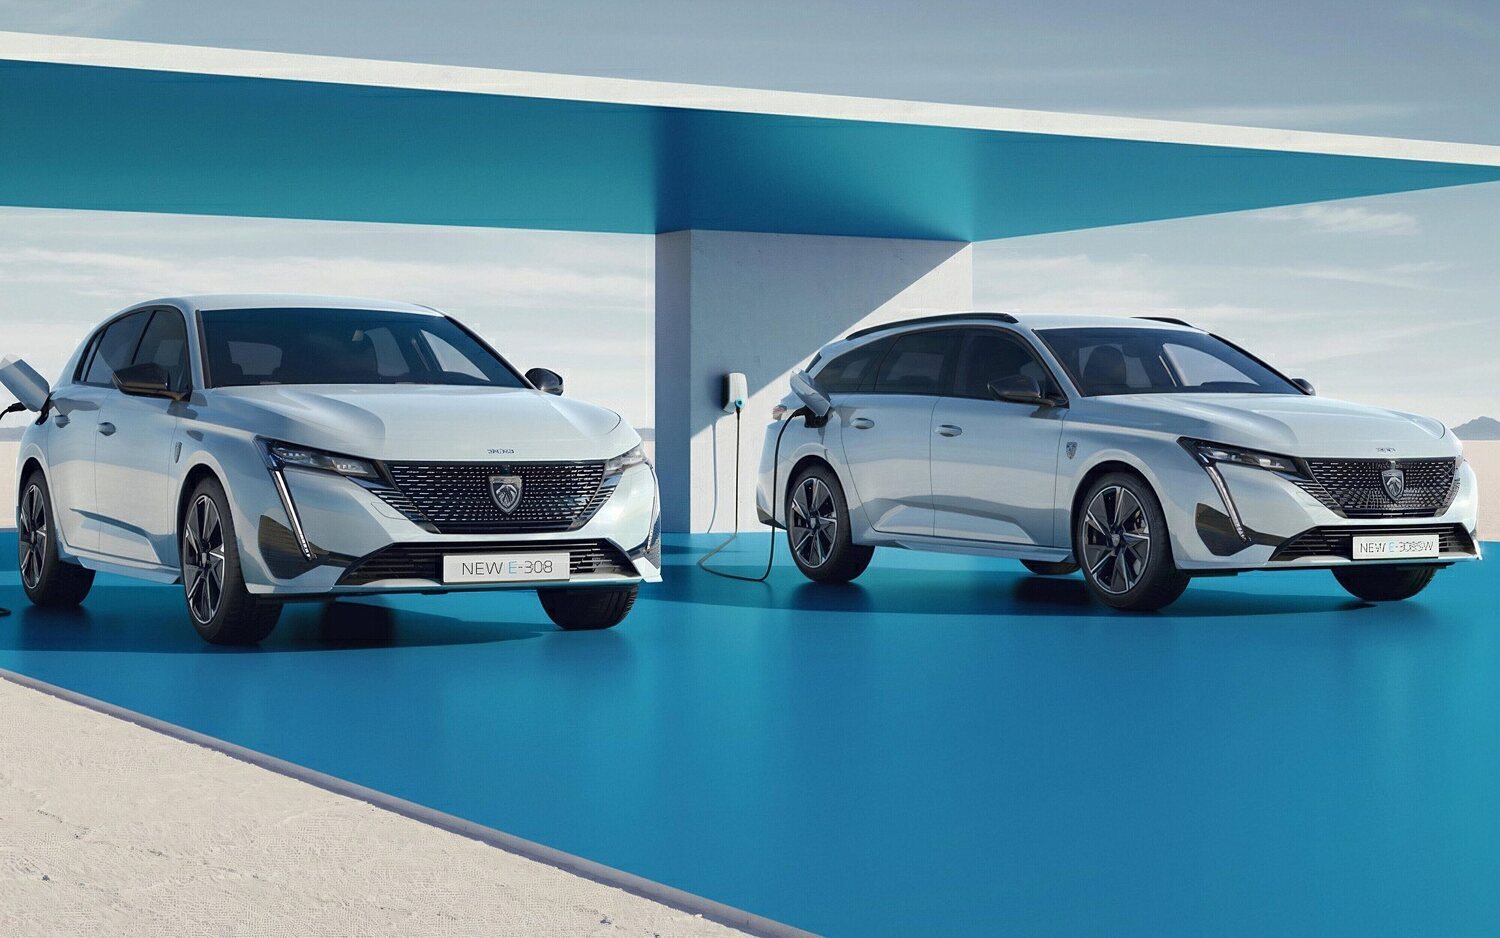 Peugeot anuncia la llegada de los  e-308 y e-308 SW eléctricos